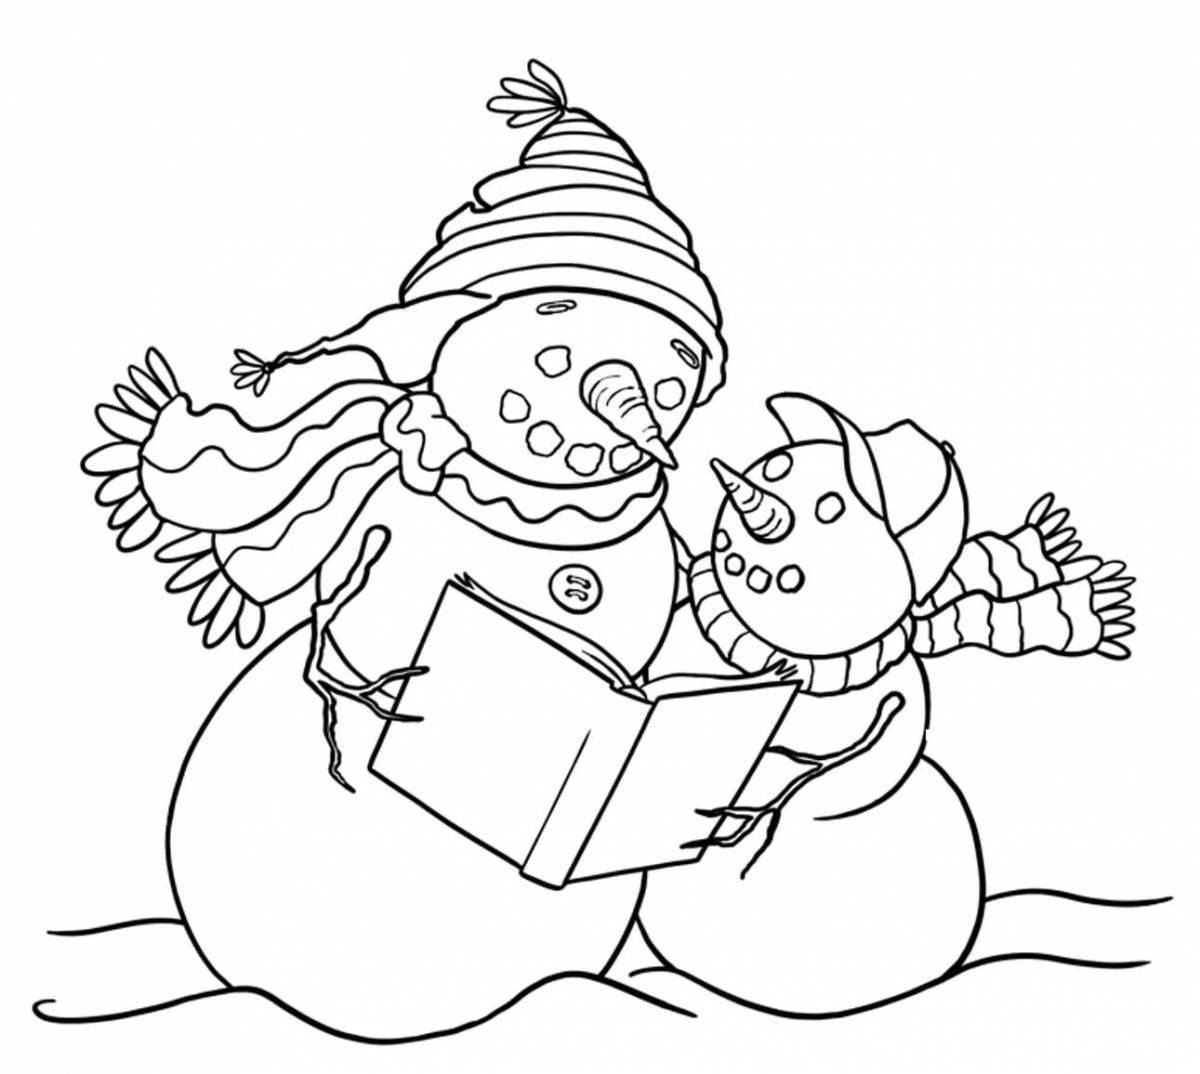 Adorable snowman family coloring book